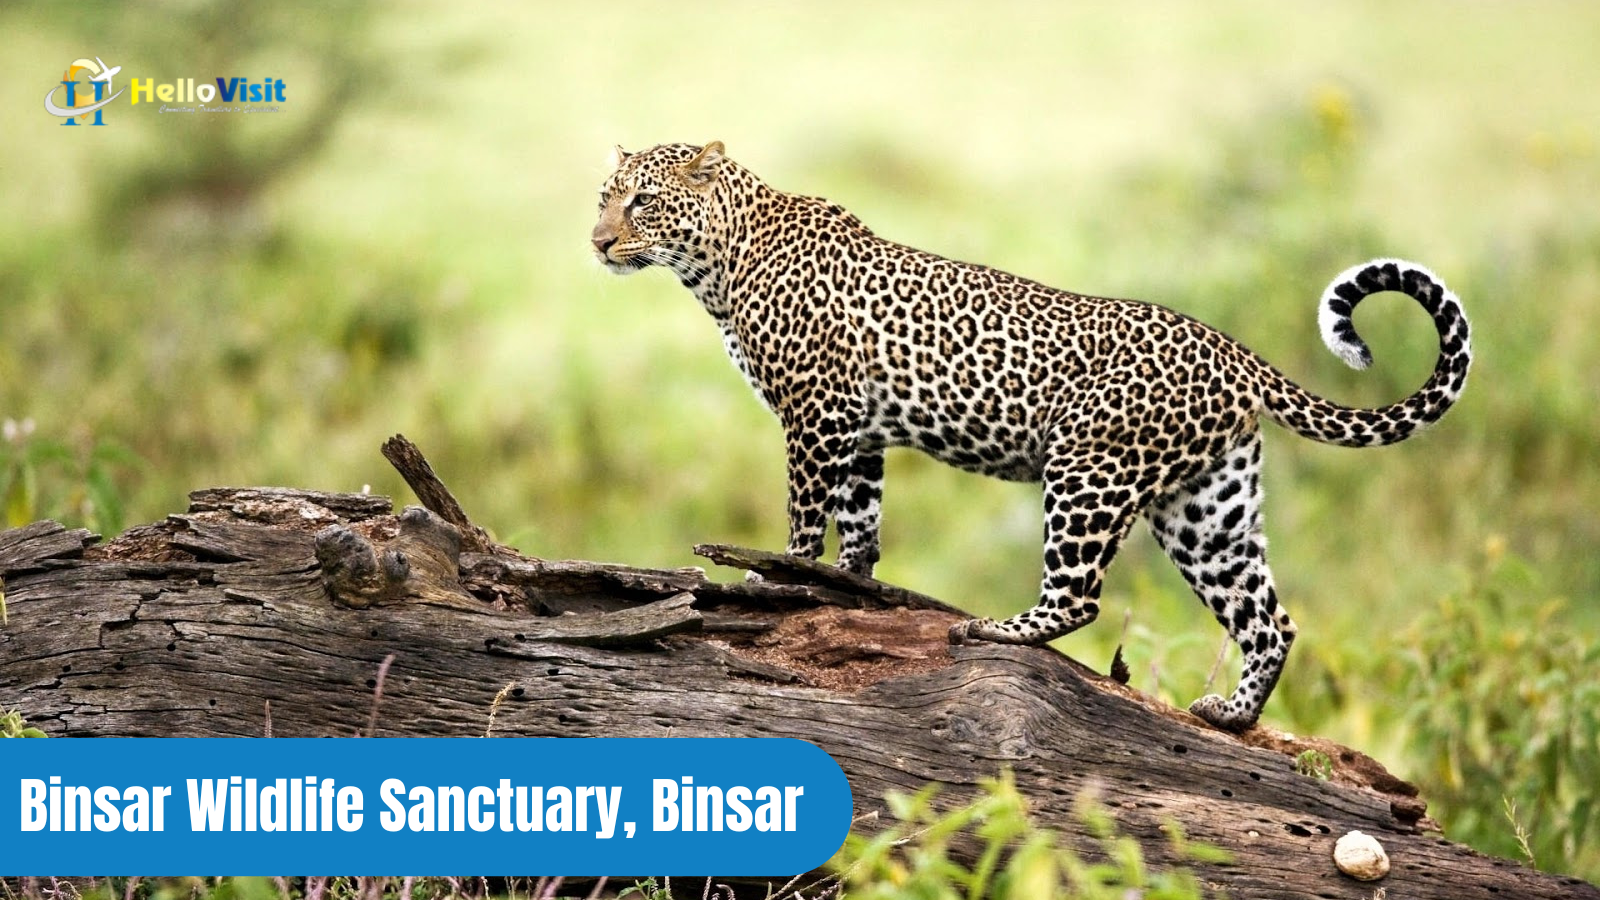 Binsar Wildlife Sanctuary, Binsar